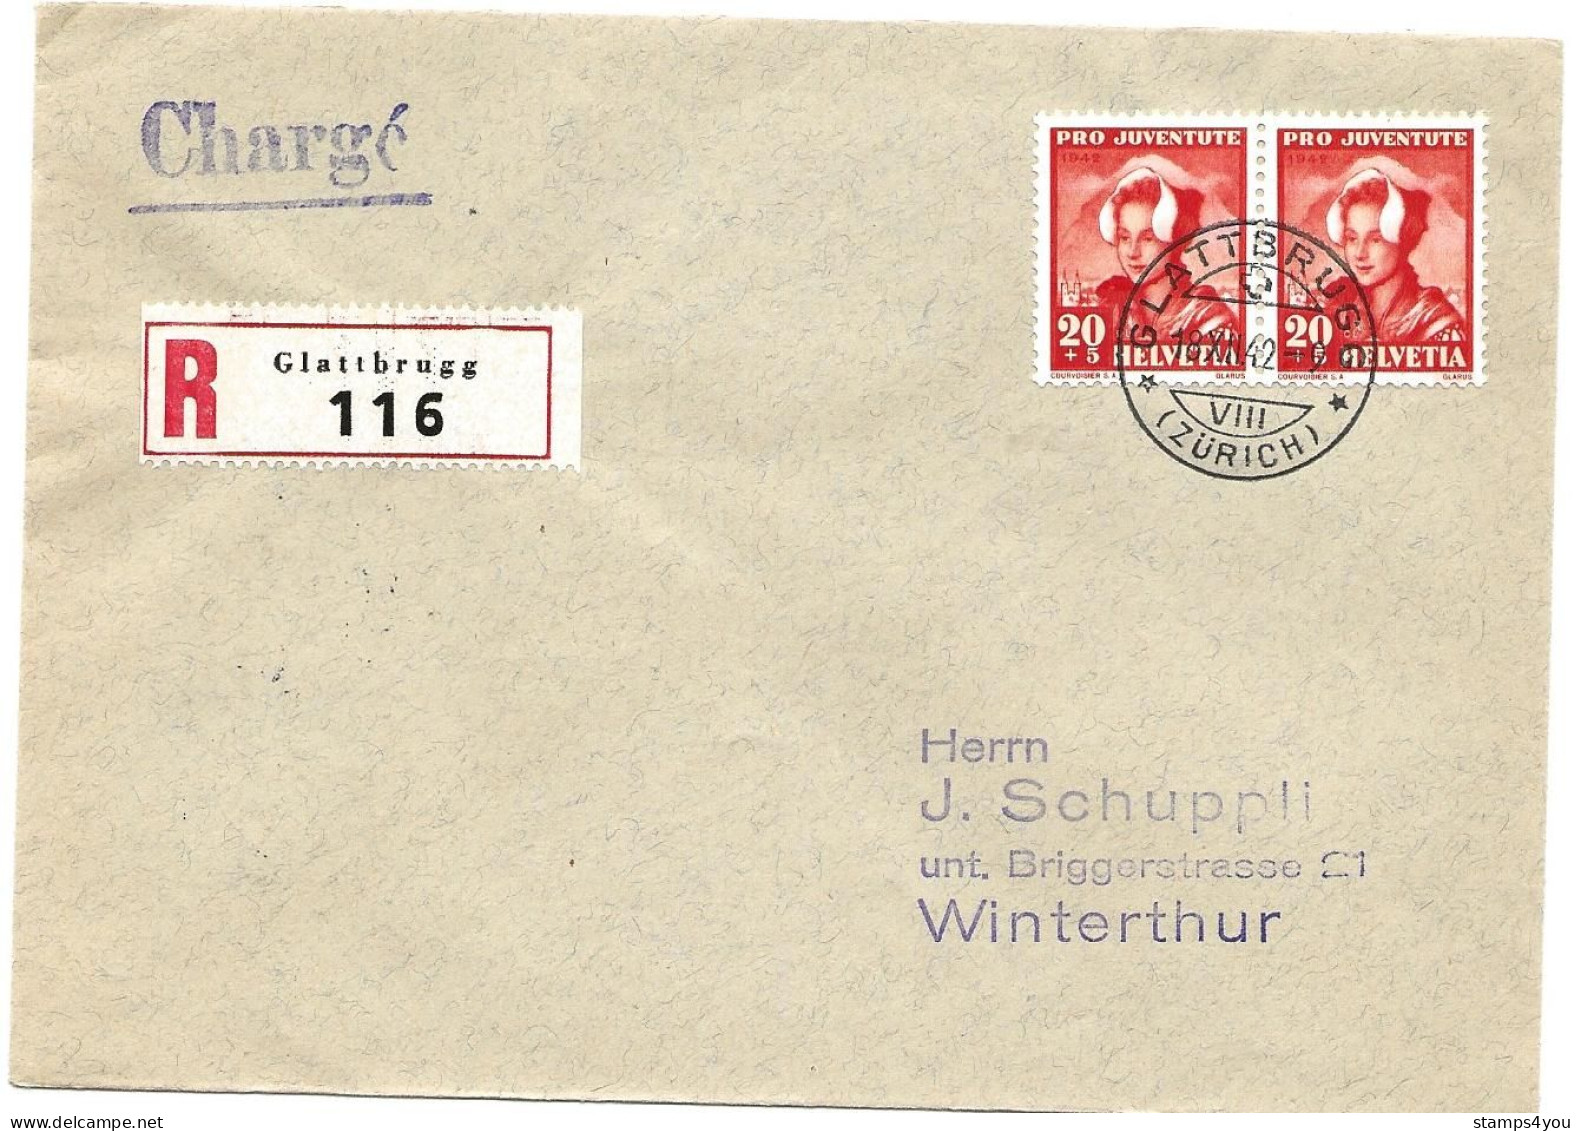 33 - 79 - Enveloppe Recommandée Envoyée De Glattbrugg 1942 - Timbres Pro Juventute - Lettres & Documents